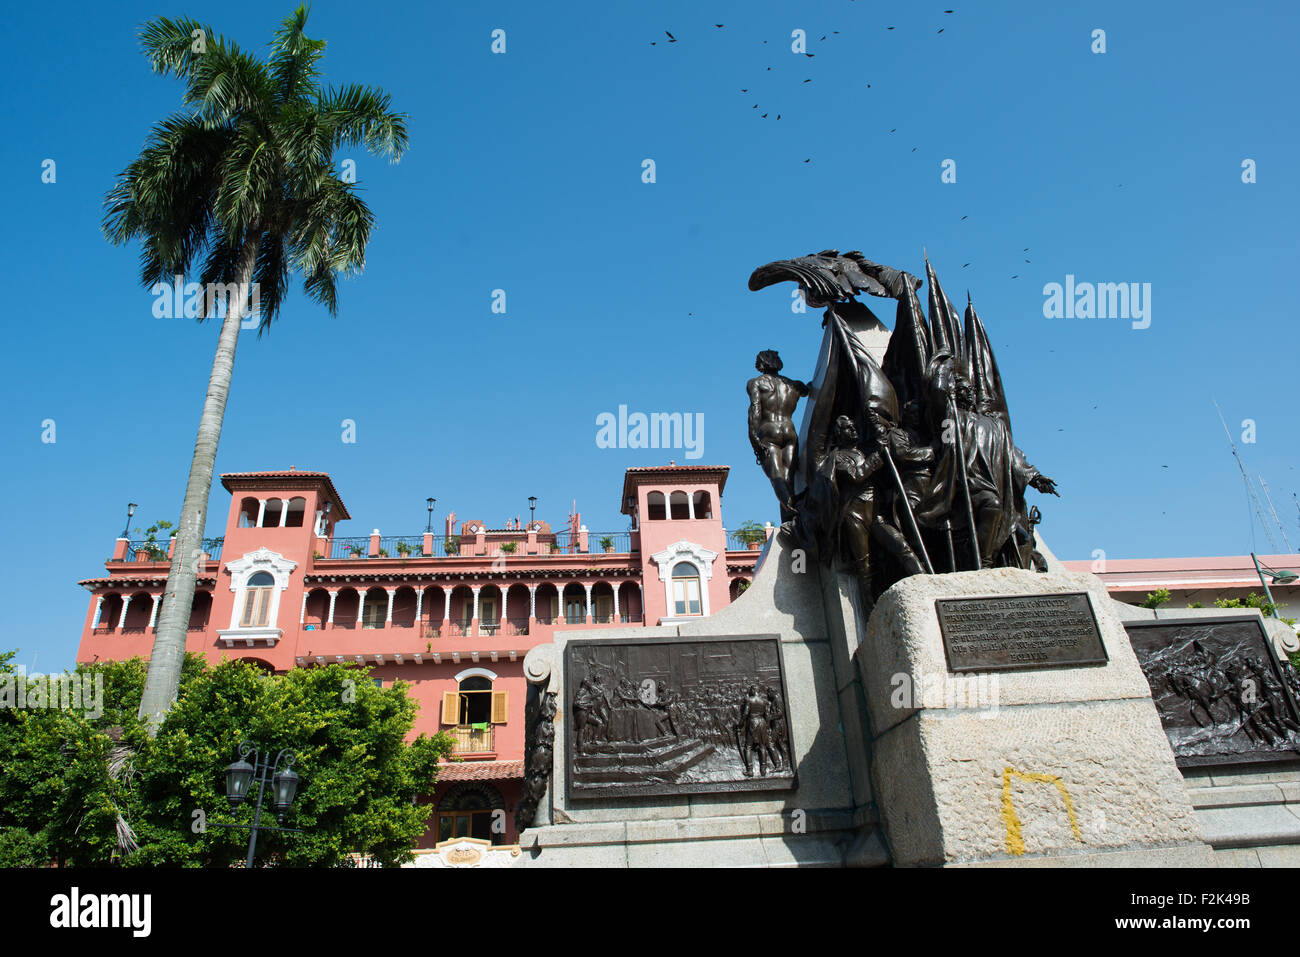 PANAMA CITY, Panama--circondato da architettura del XIX secolo, Plaza Simon Bolivar è una piccola piazza nel Casco Viejo, un blocco dal fronte mare. Esso è chiamato dopo il generale venezuelano Simón Bolívar, "Liberatore dell America Latina ", e una statua di Bolivar sorge ben visibile al centro della piazza. Foto Stock